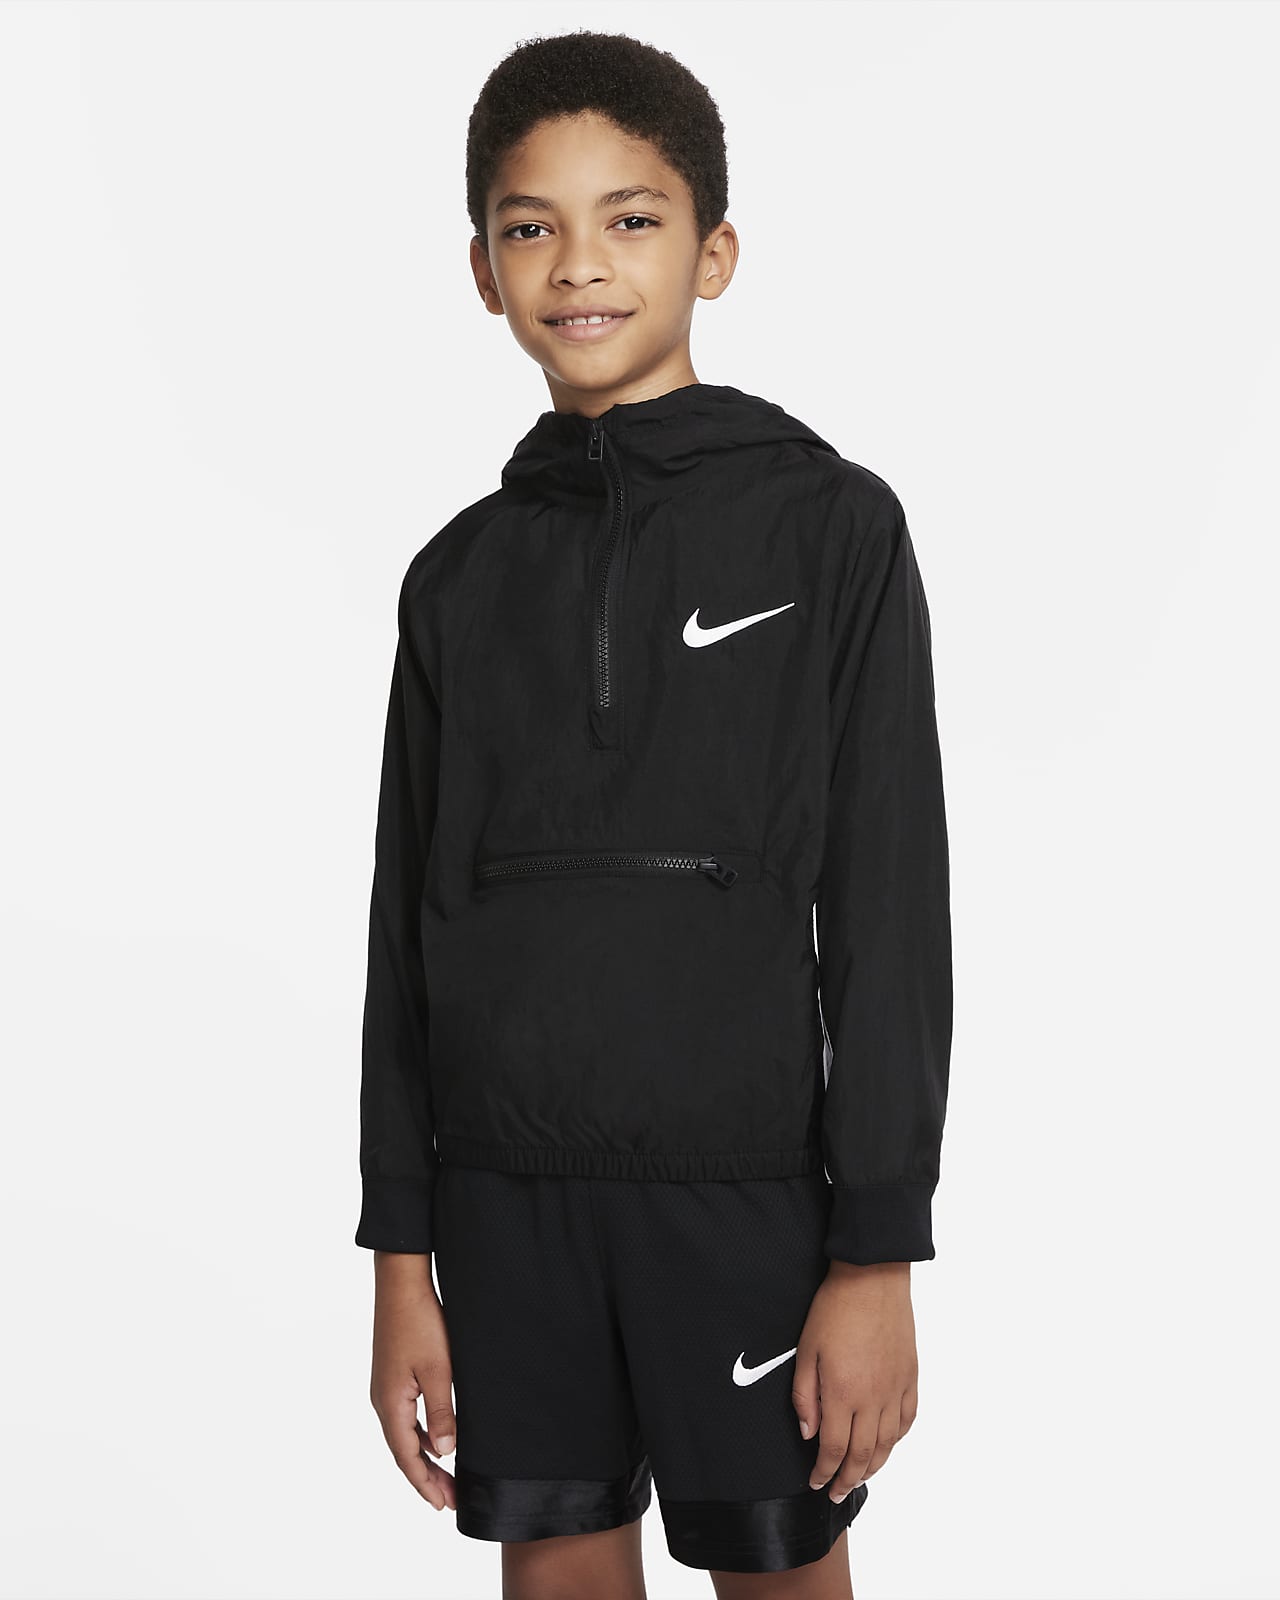 Basketjacka Nike Dri-FIT Crossover för ungdom (killar)